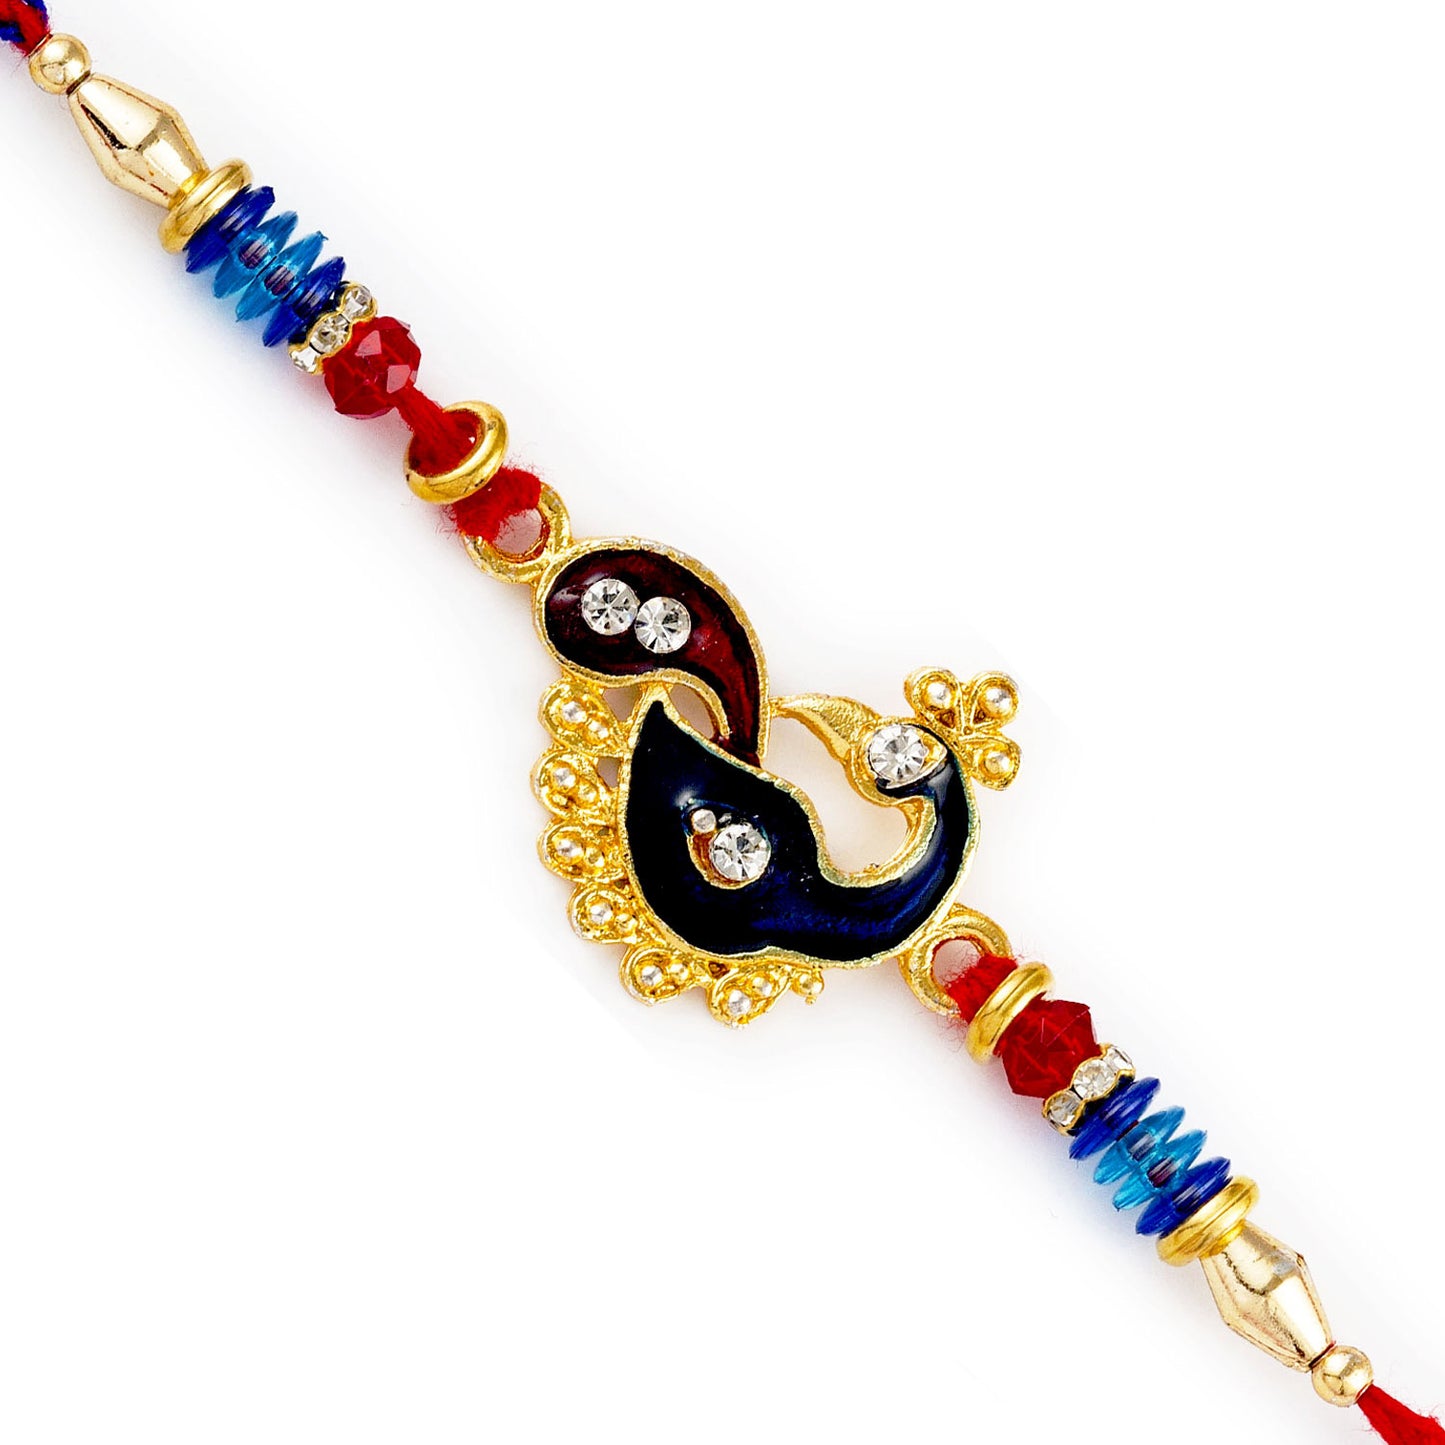 Aapno Rajasthan Red & Blue Beads Peacock Motif Rakhi - Default Title (RJ17393)